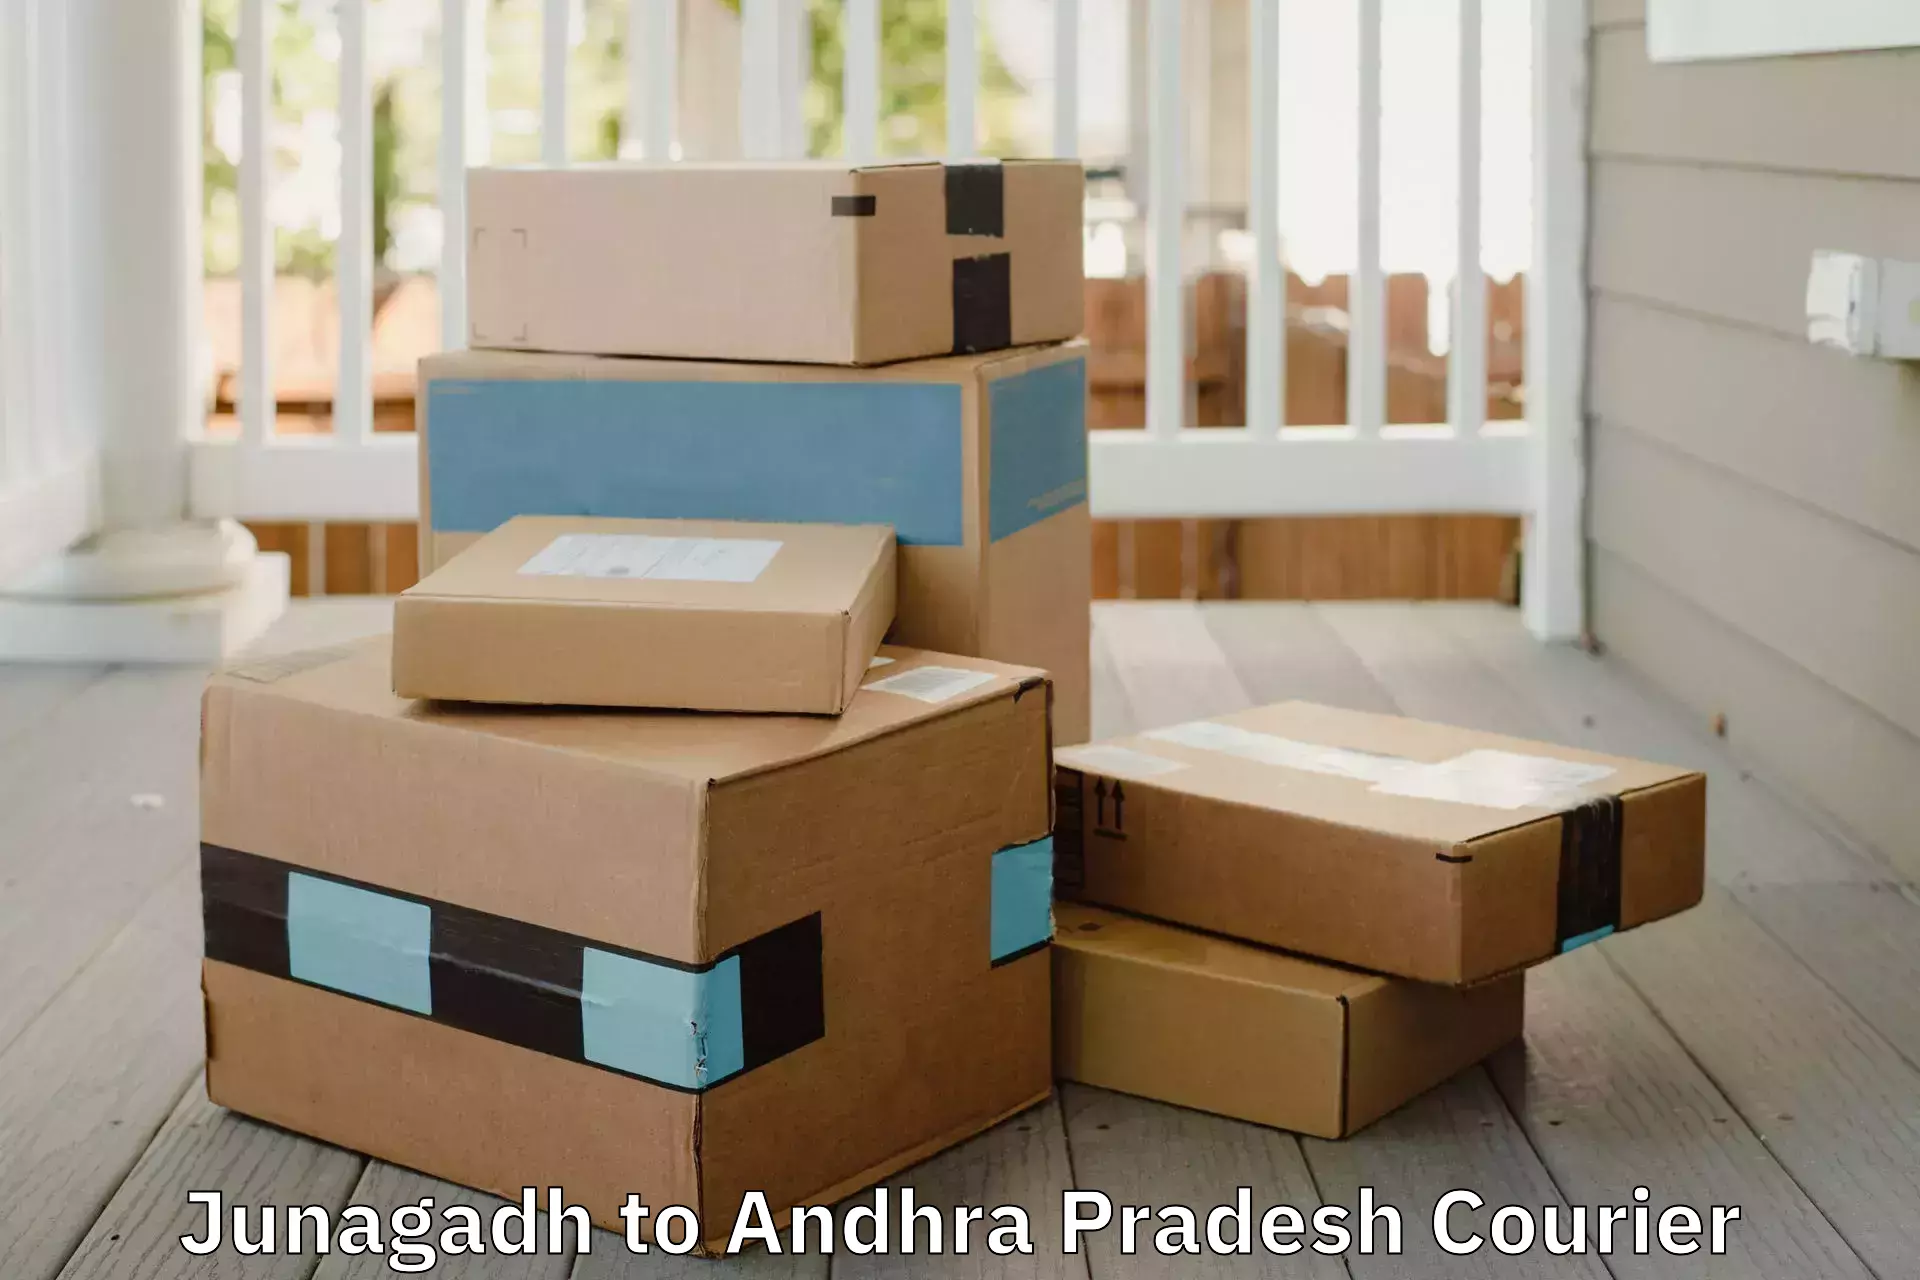 Residential moving experts Junagadh to Veldurthi